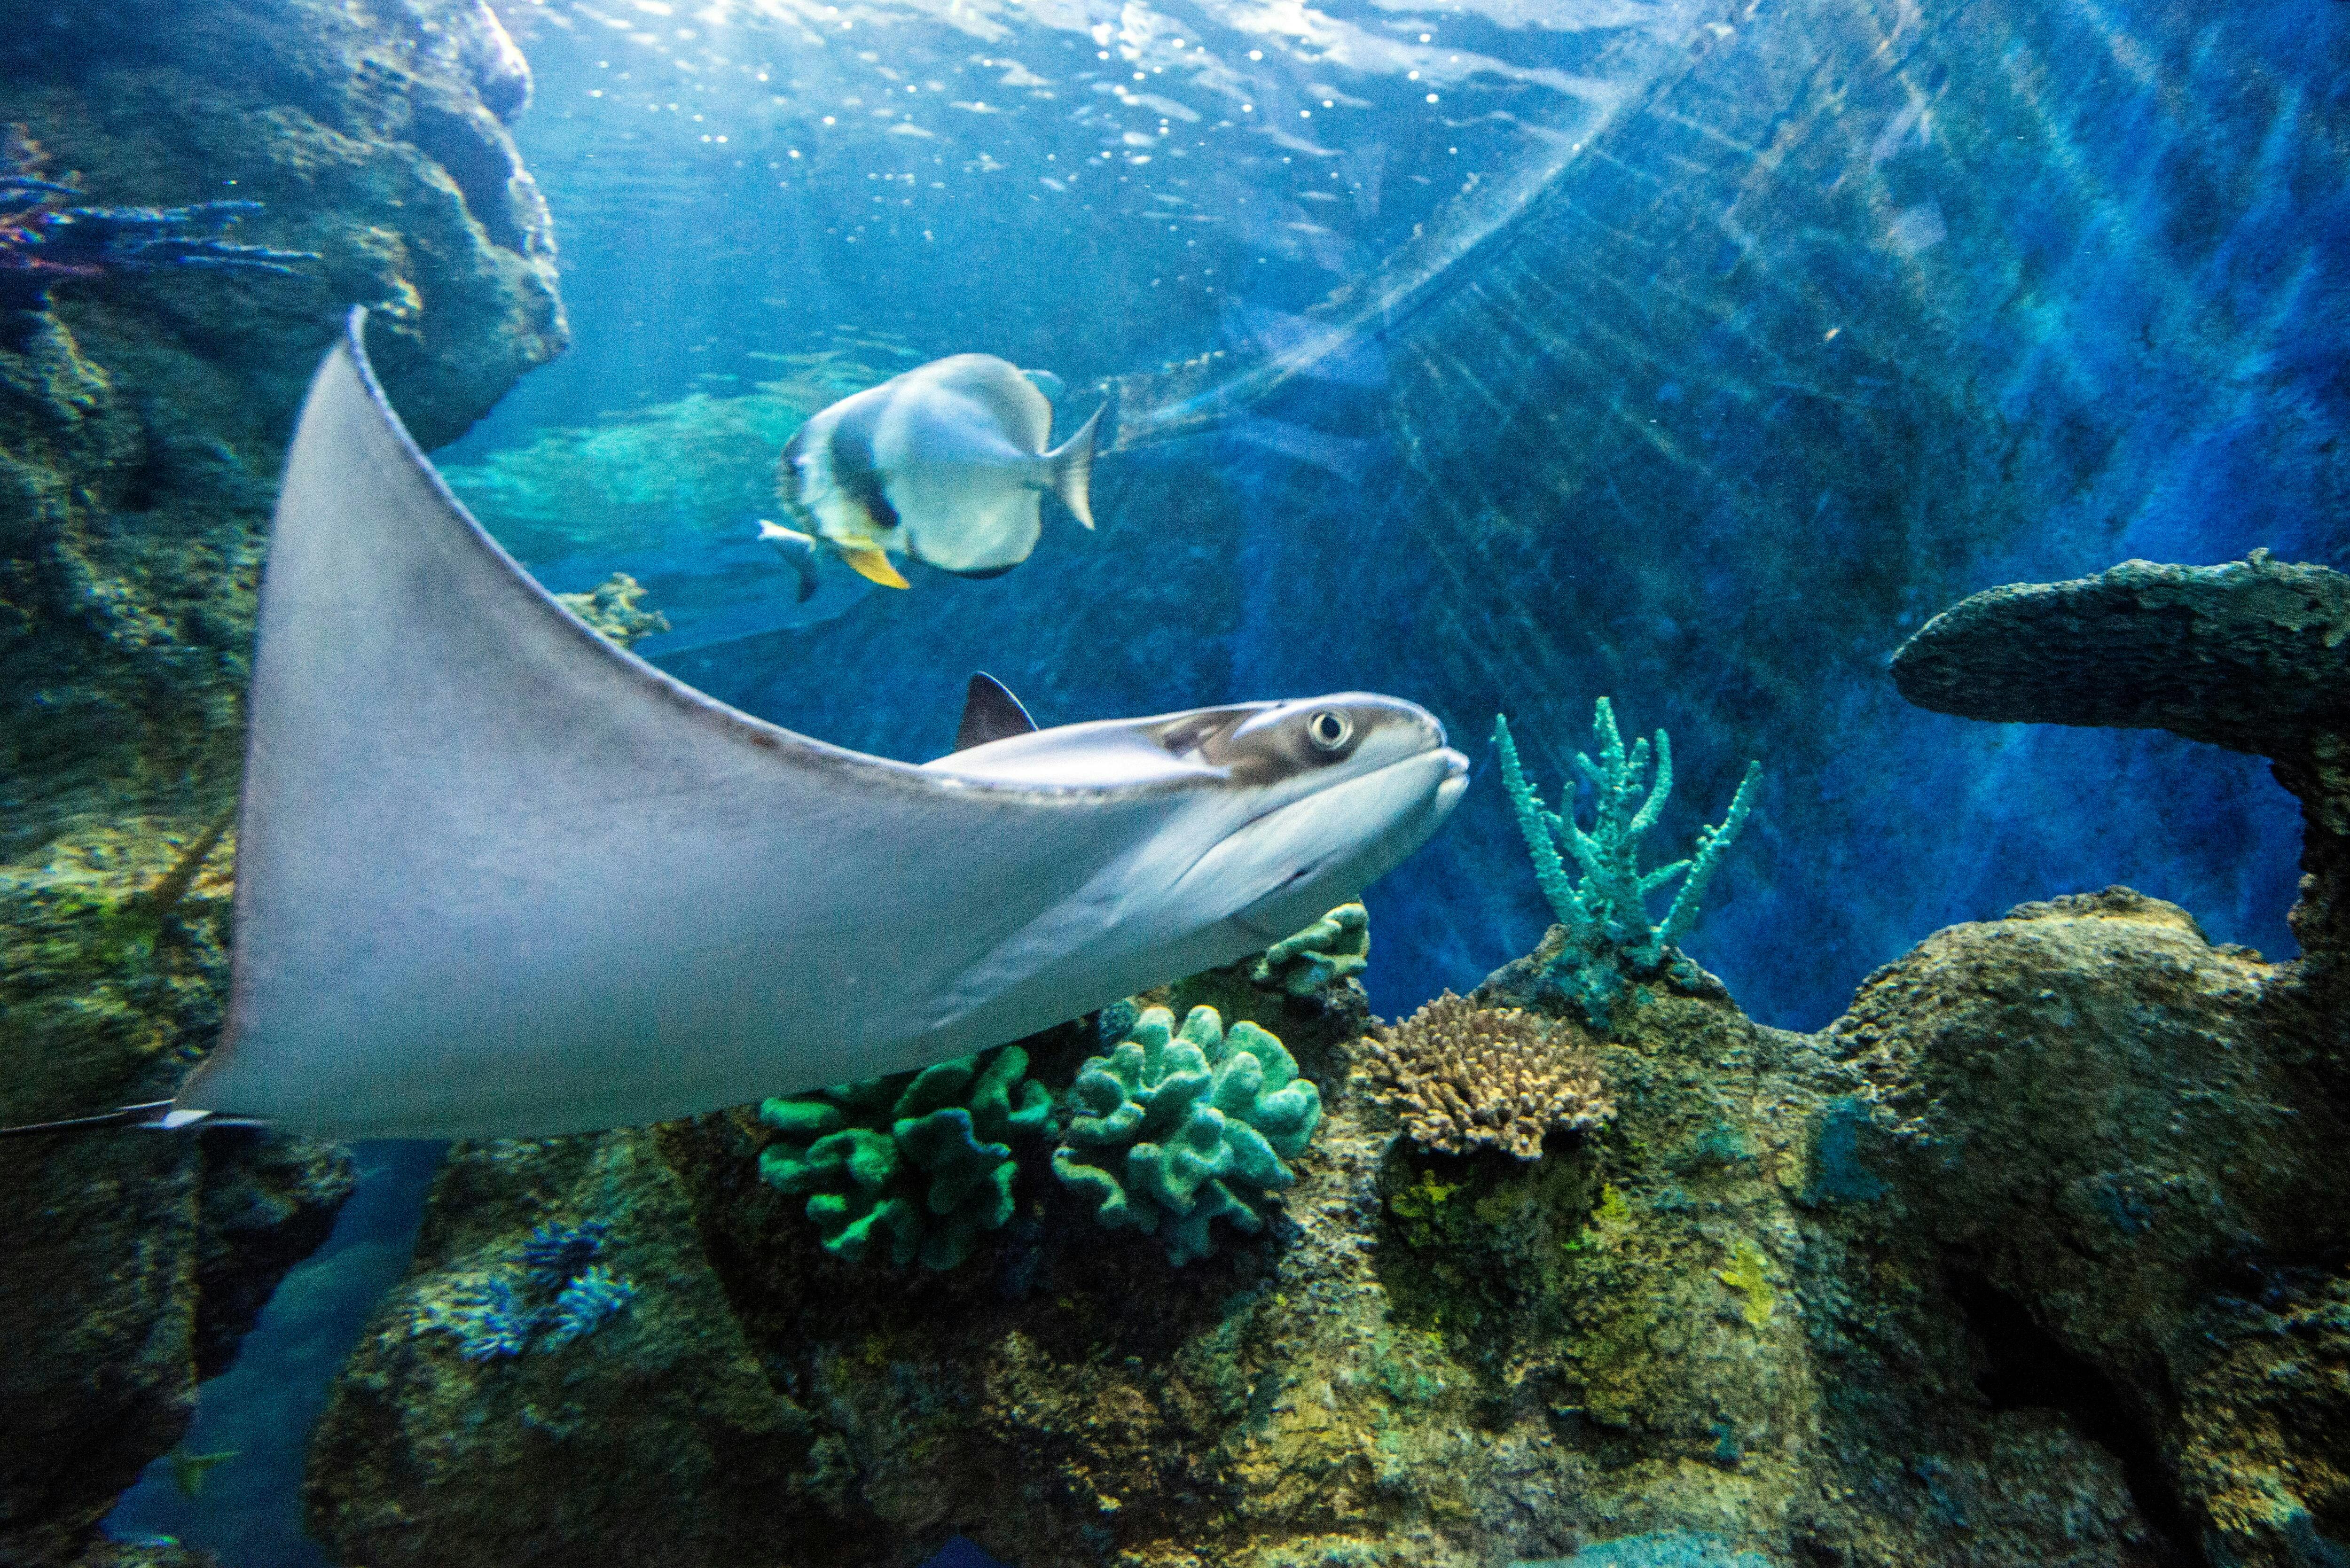 Malta National Aquarium Ticket